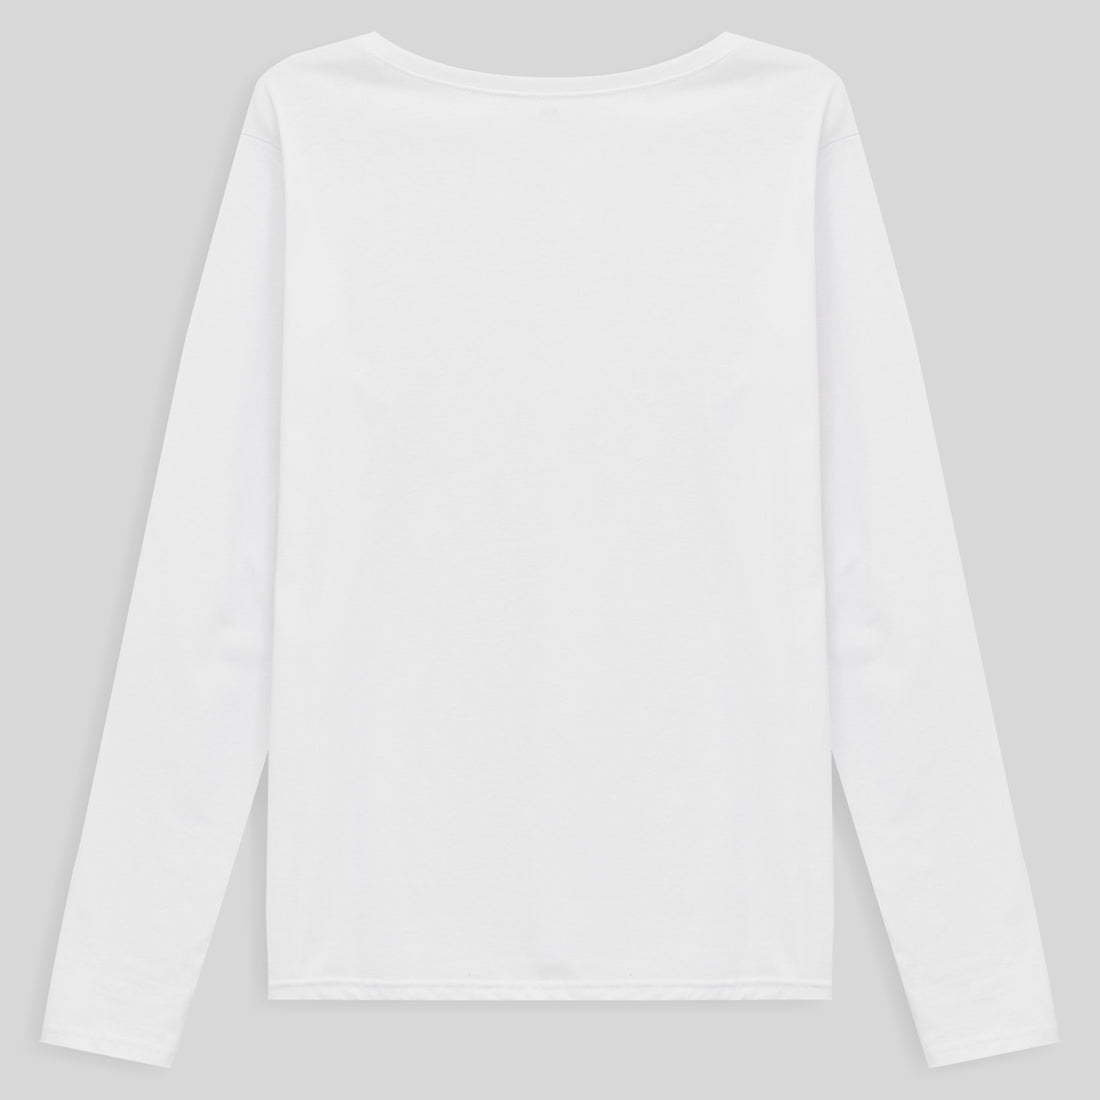 Camiseta Babylook Algodão Premium Manga Longa Gola V Plus Size Feminina - Branco